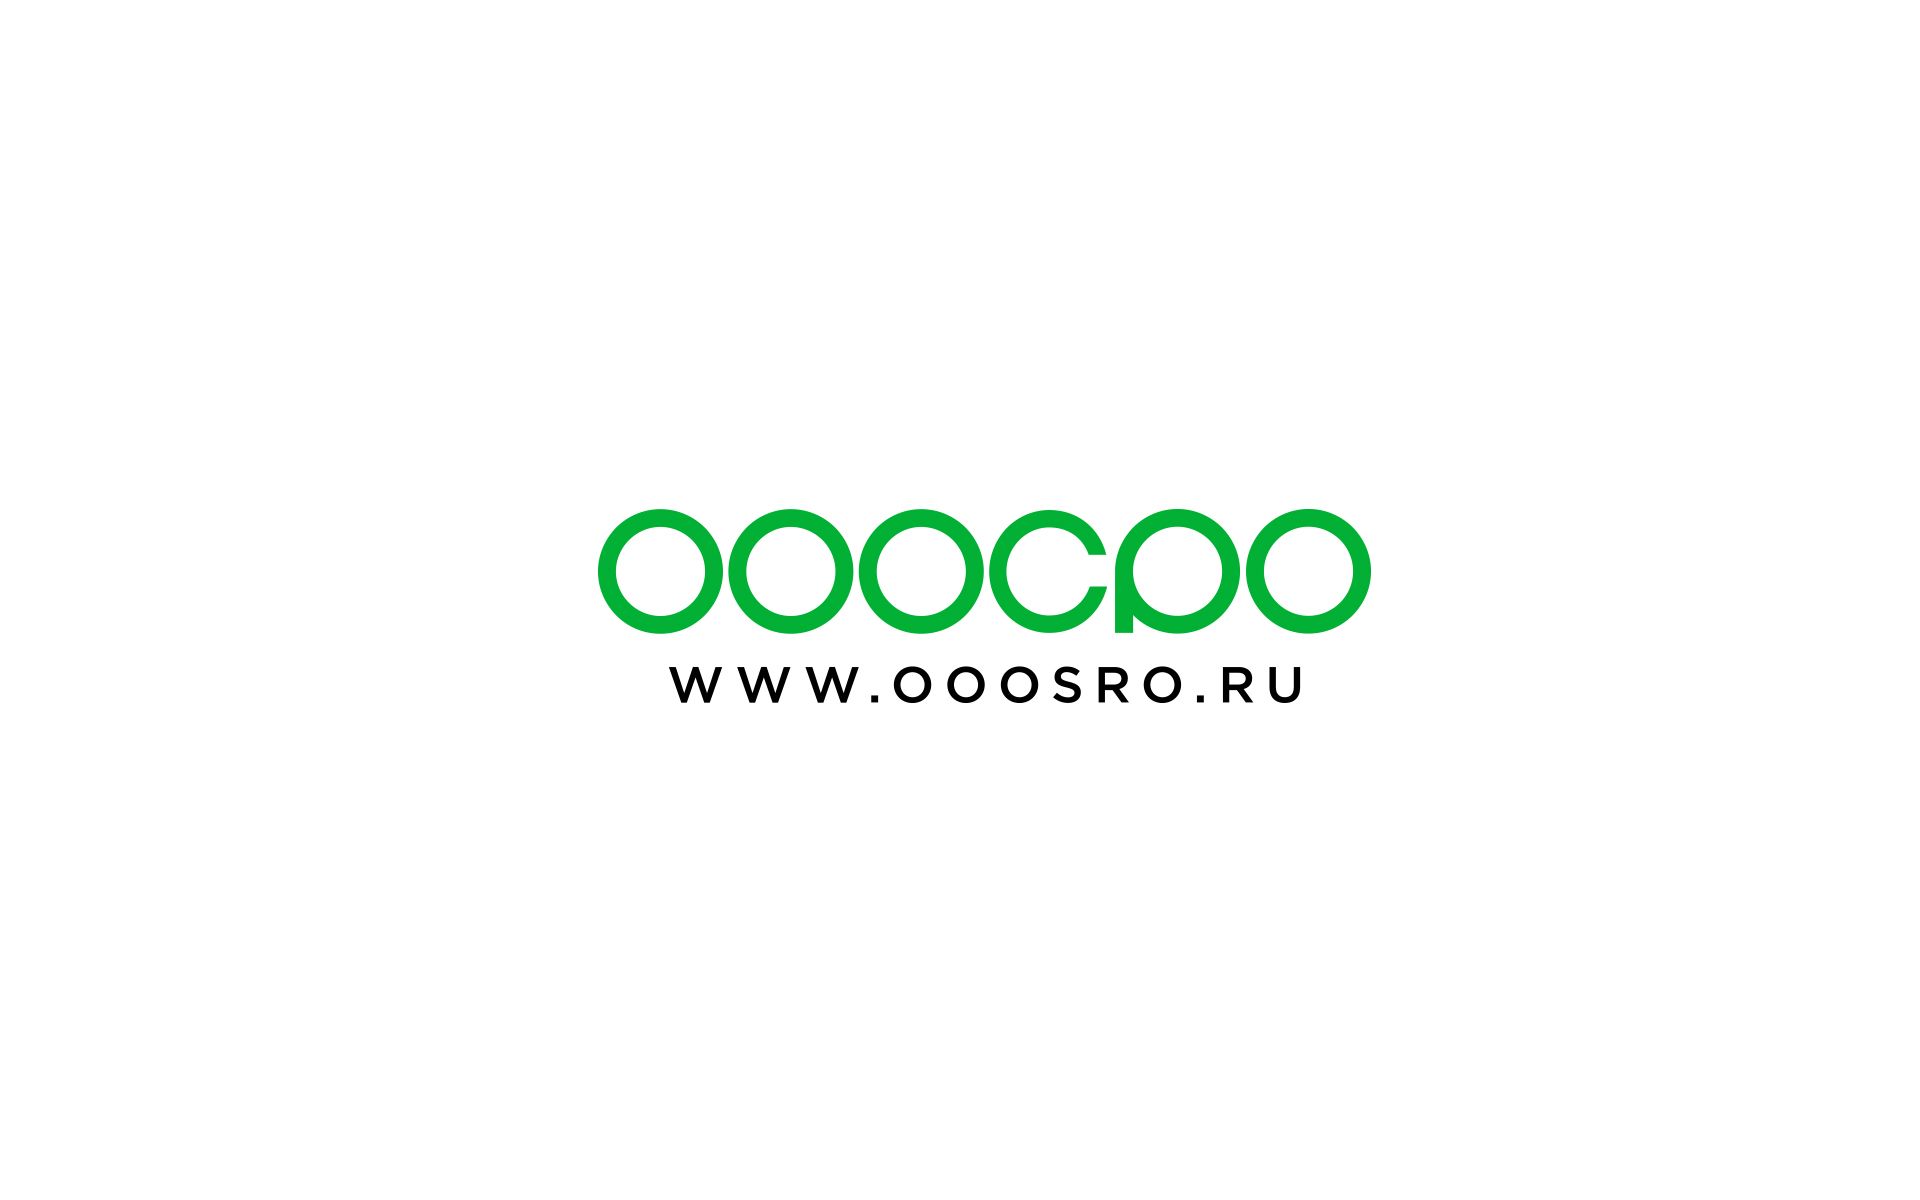 Логотип для сайта юридических услуг ООО СРО - дизайнер U4po4mak